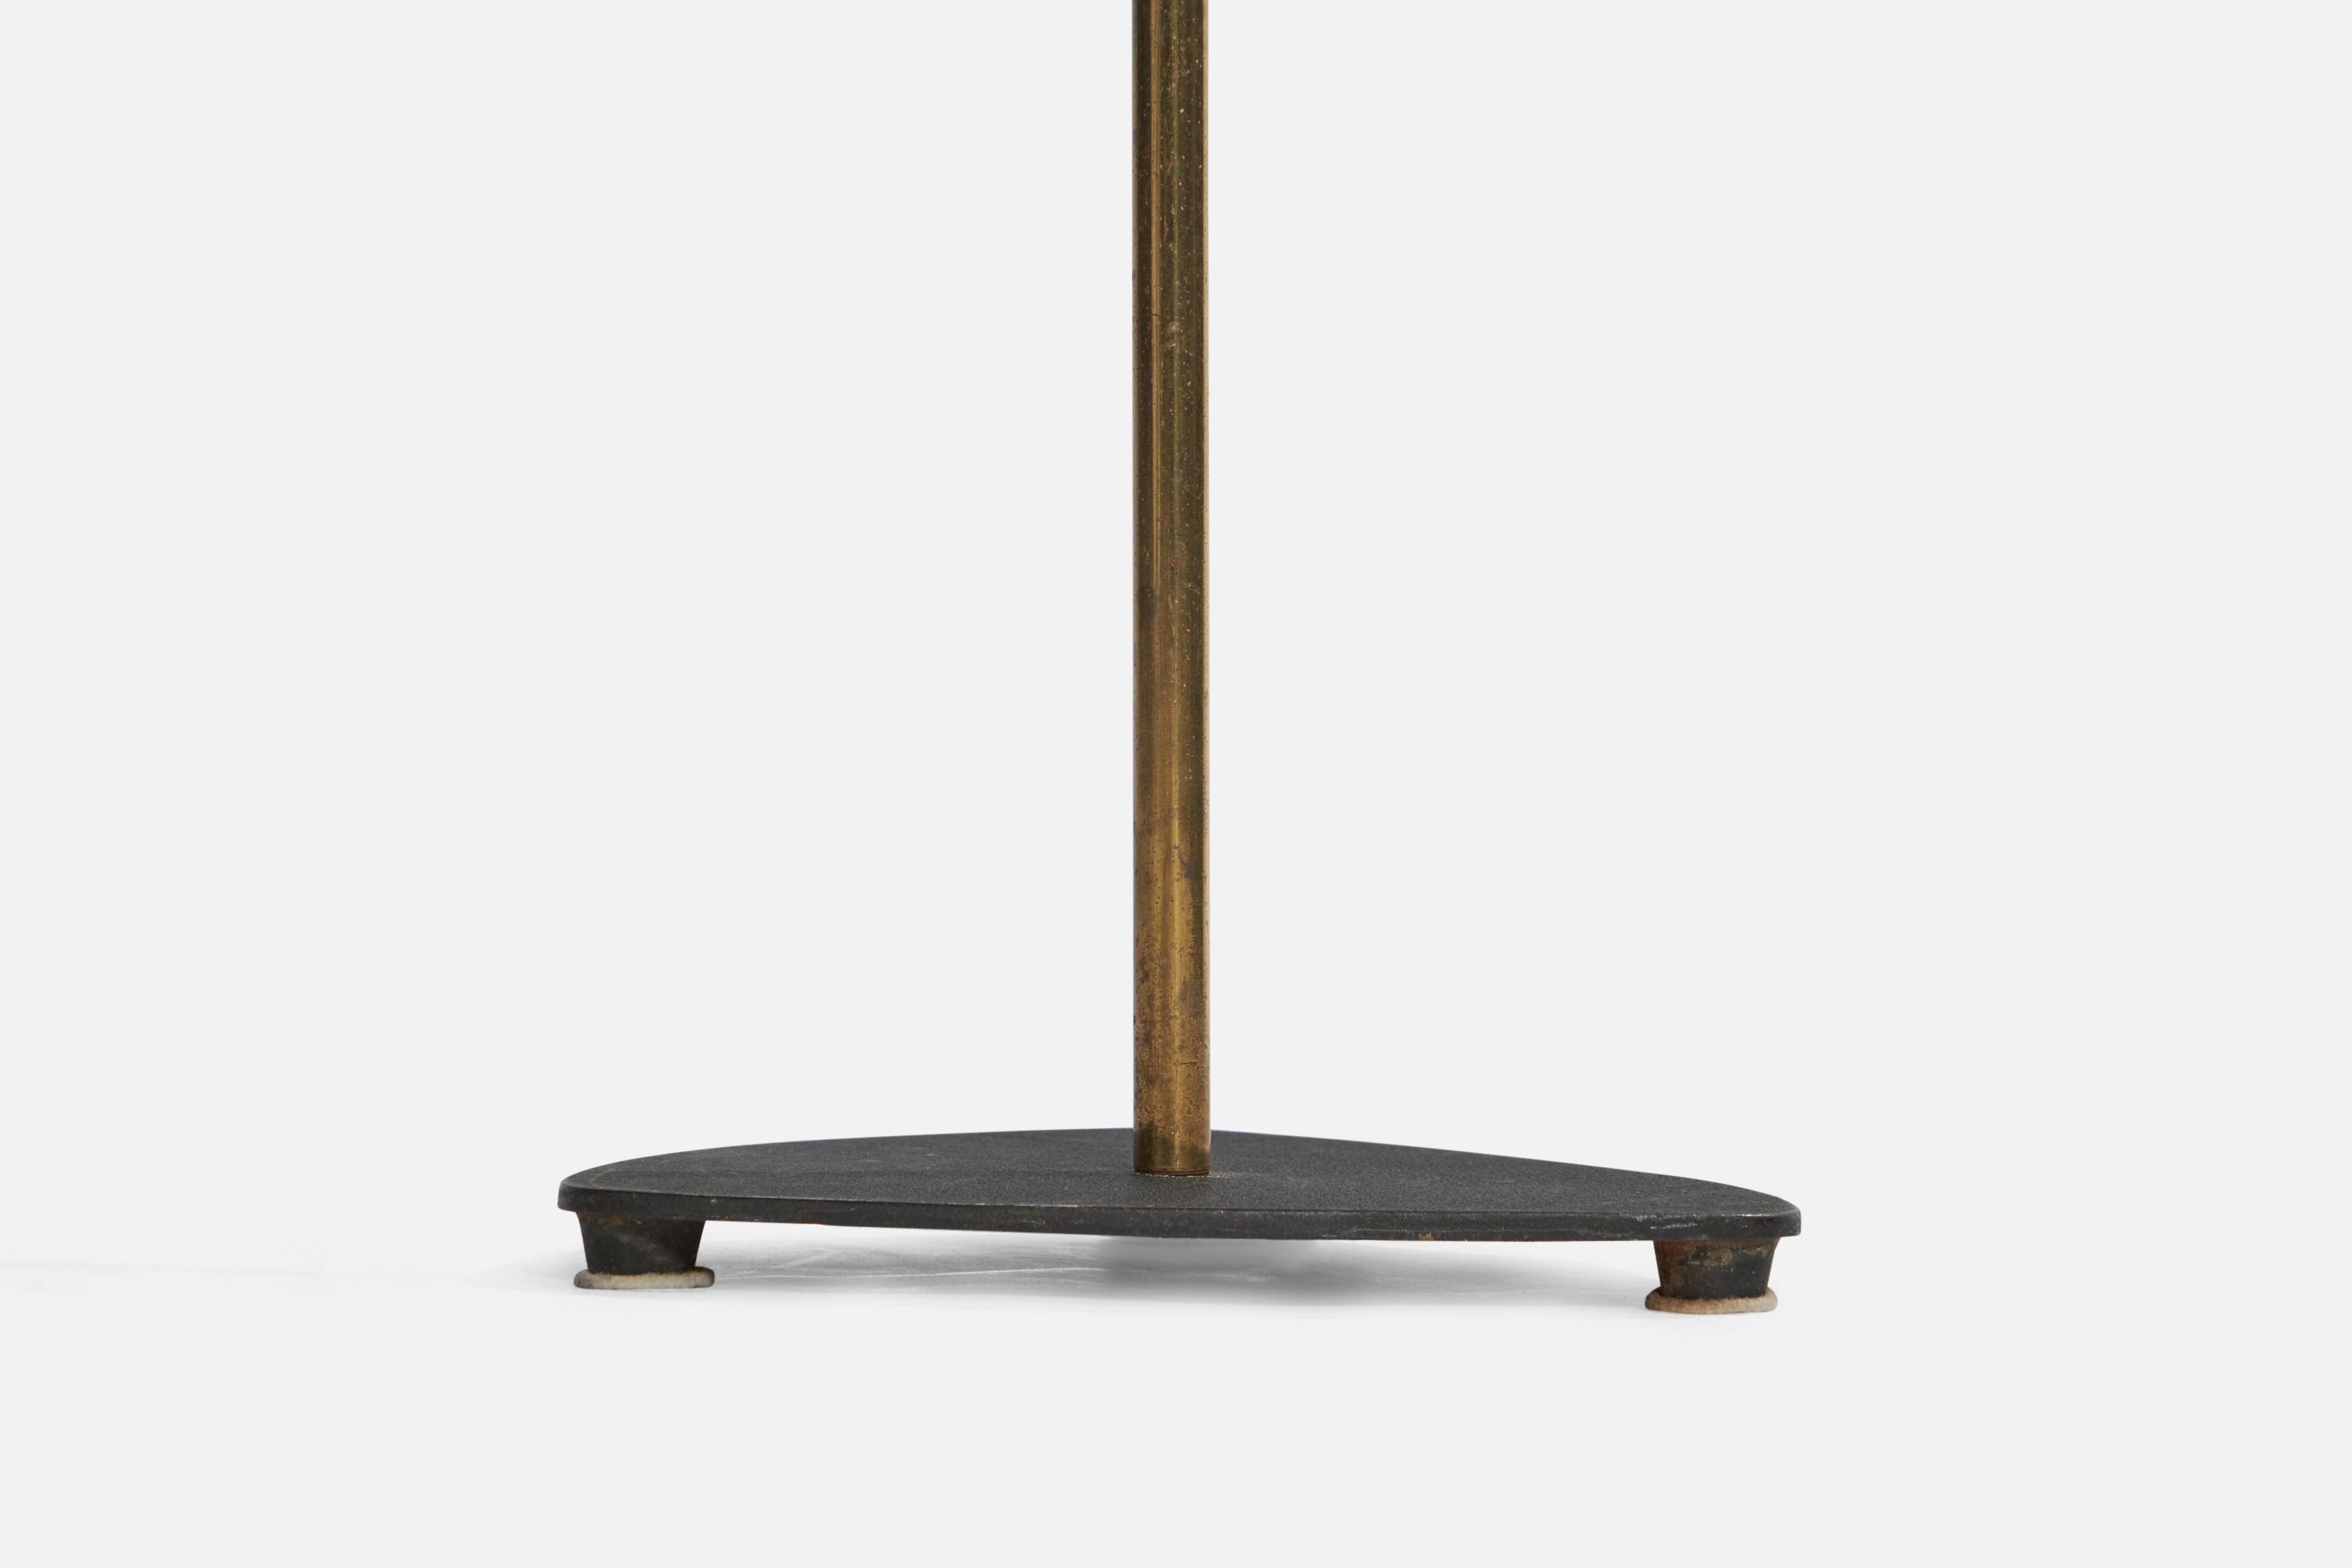 Danish Designer, Floor Lamp, Brass, Iron, Bakelite, Rattan, Denmark, 1940s For Sale 2